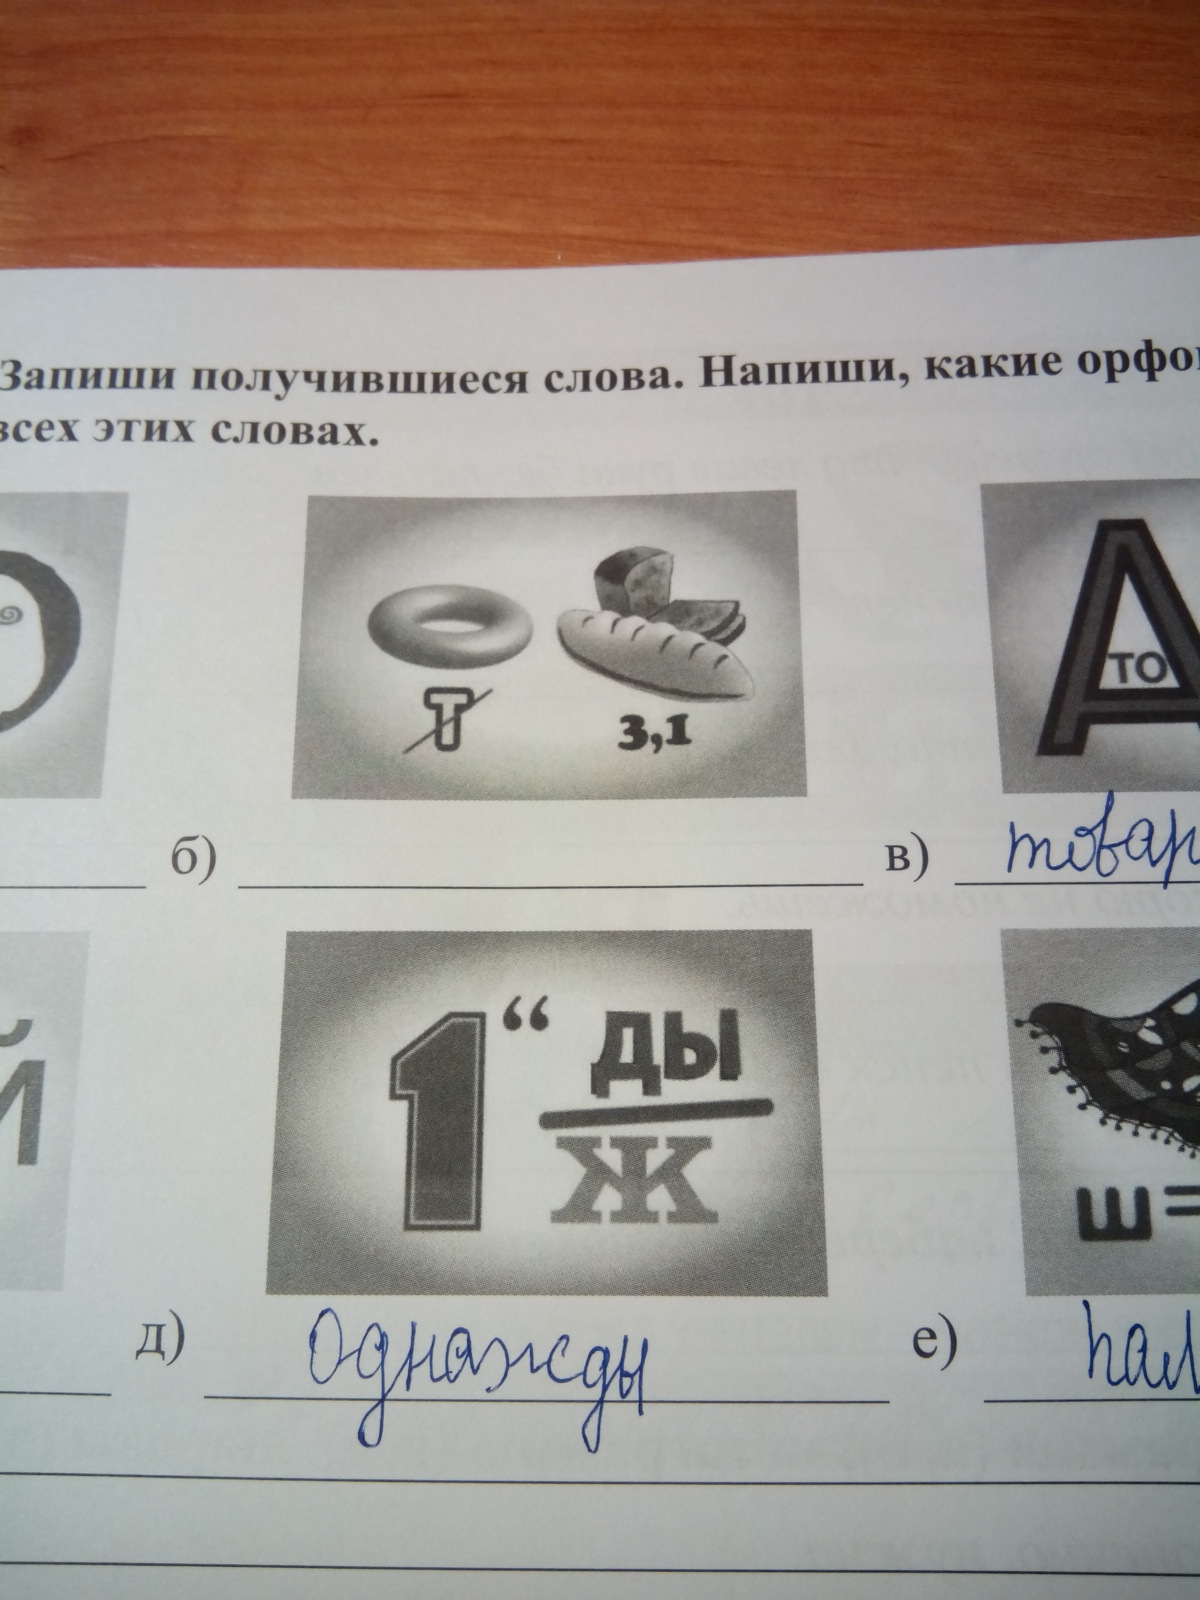 Реши ребус 2 класс. Ребусы для 2 класса. Ребусы про русский язык. Ребусы по русскому языку с ответами.